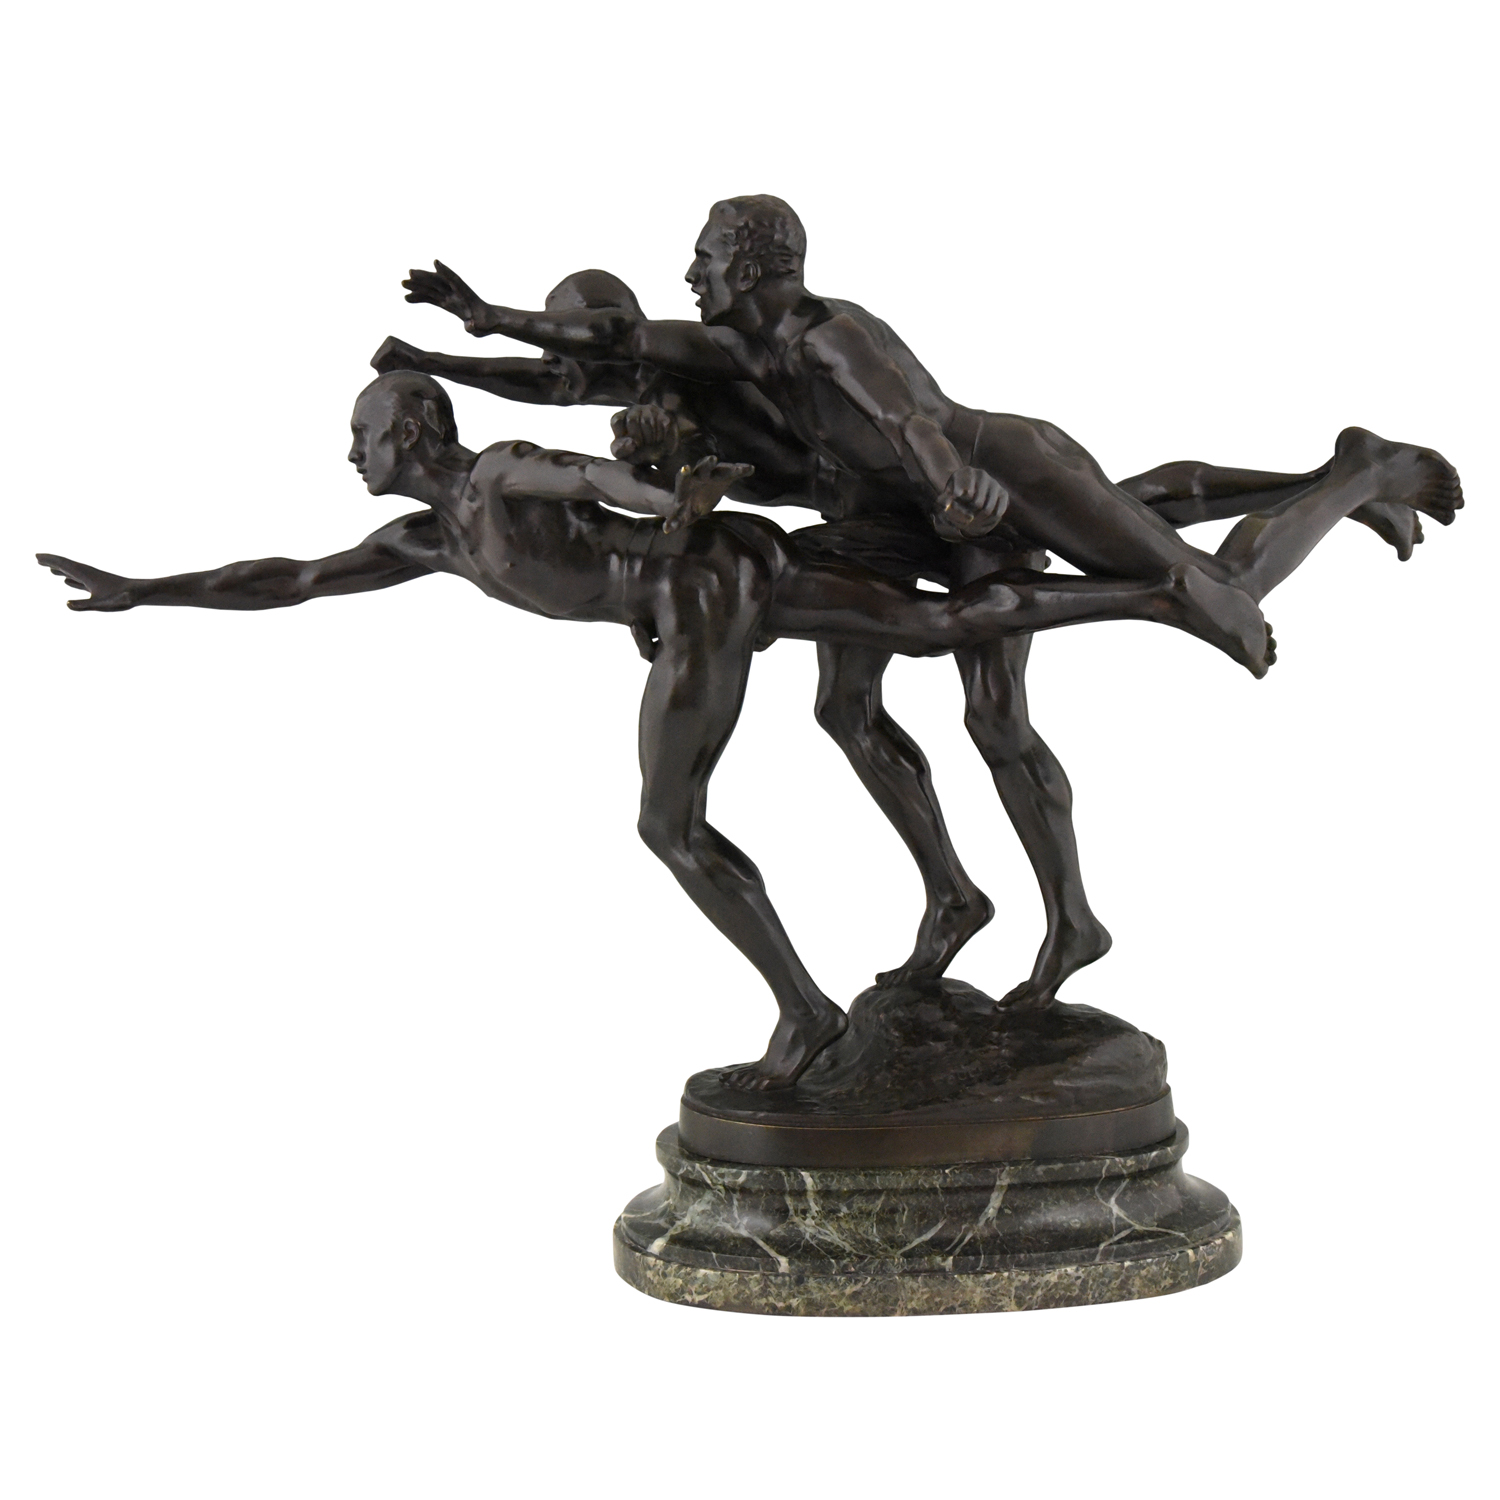 Sculpture en bronze 3 athlètes courants AU BUT ou Les coureurs